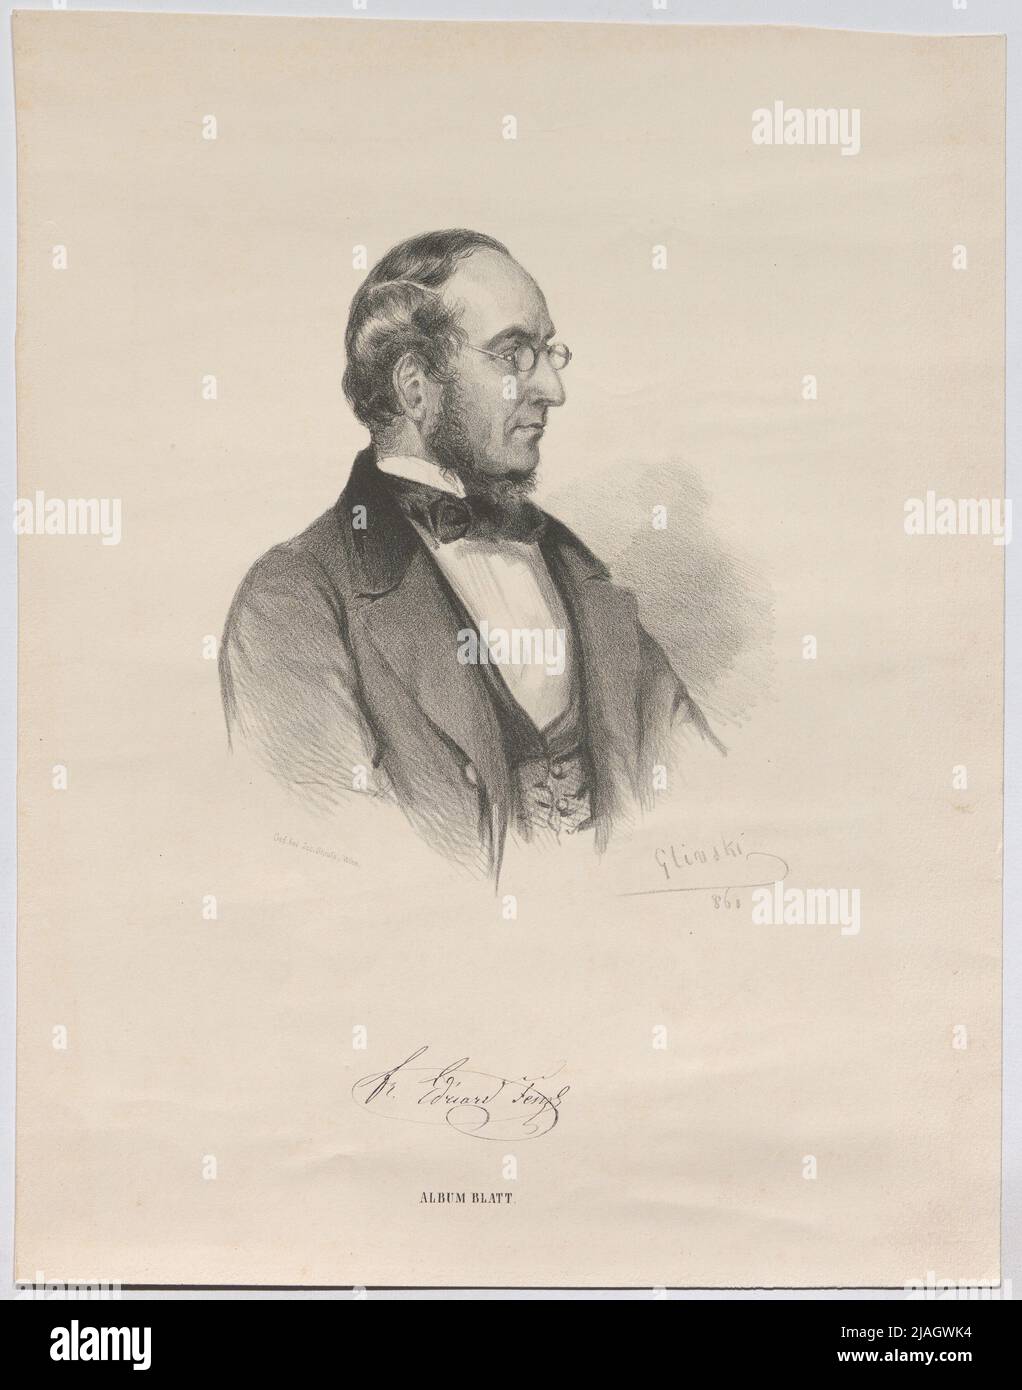 Dr. Eduard Fenzl. J. Glinski, lithographer, Joseph Stoufs, Printer Stock Photo